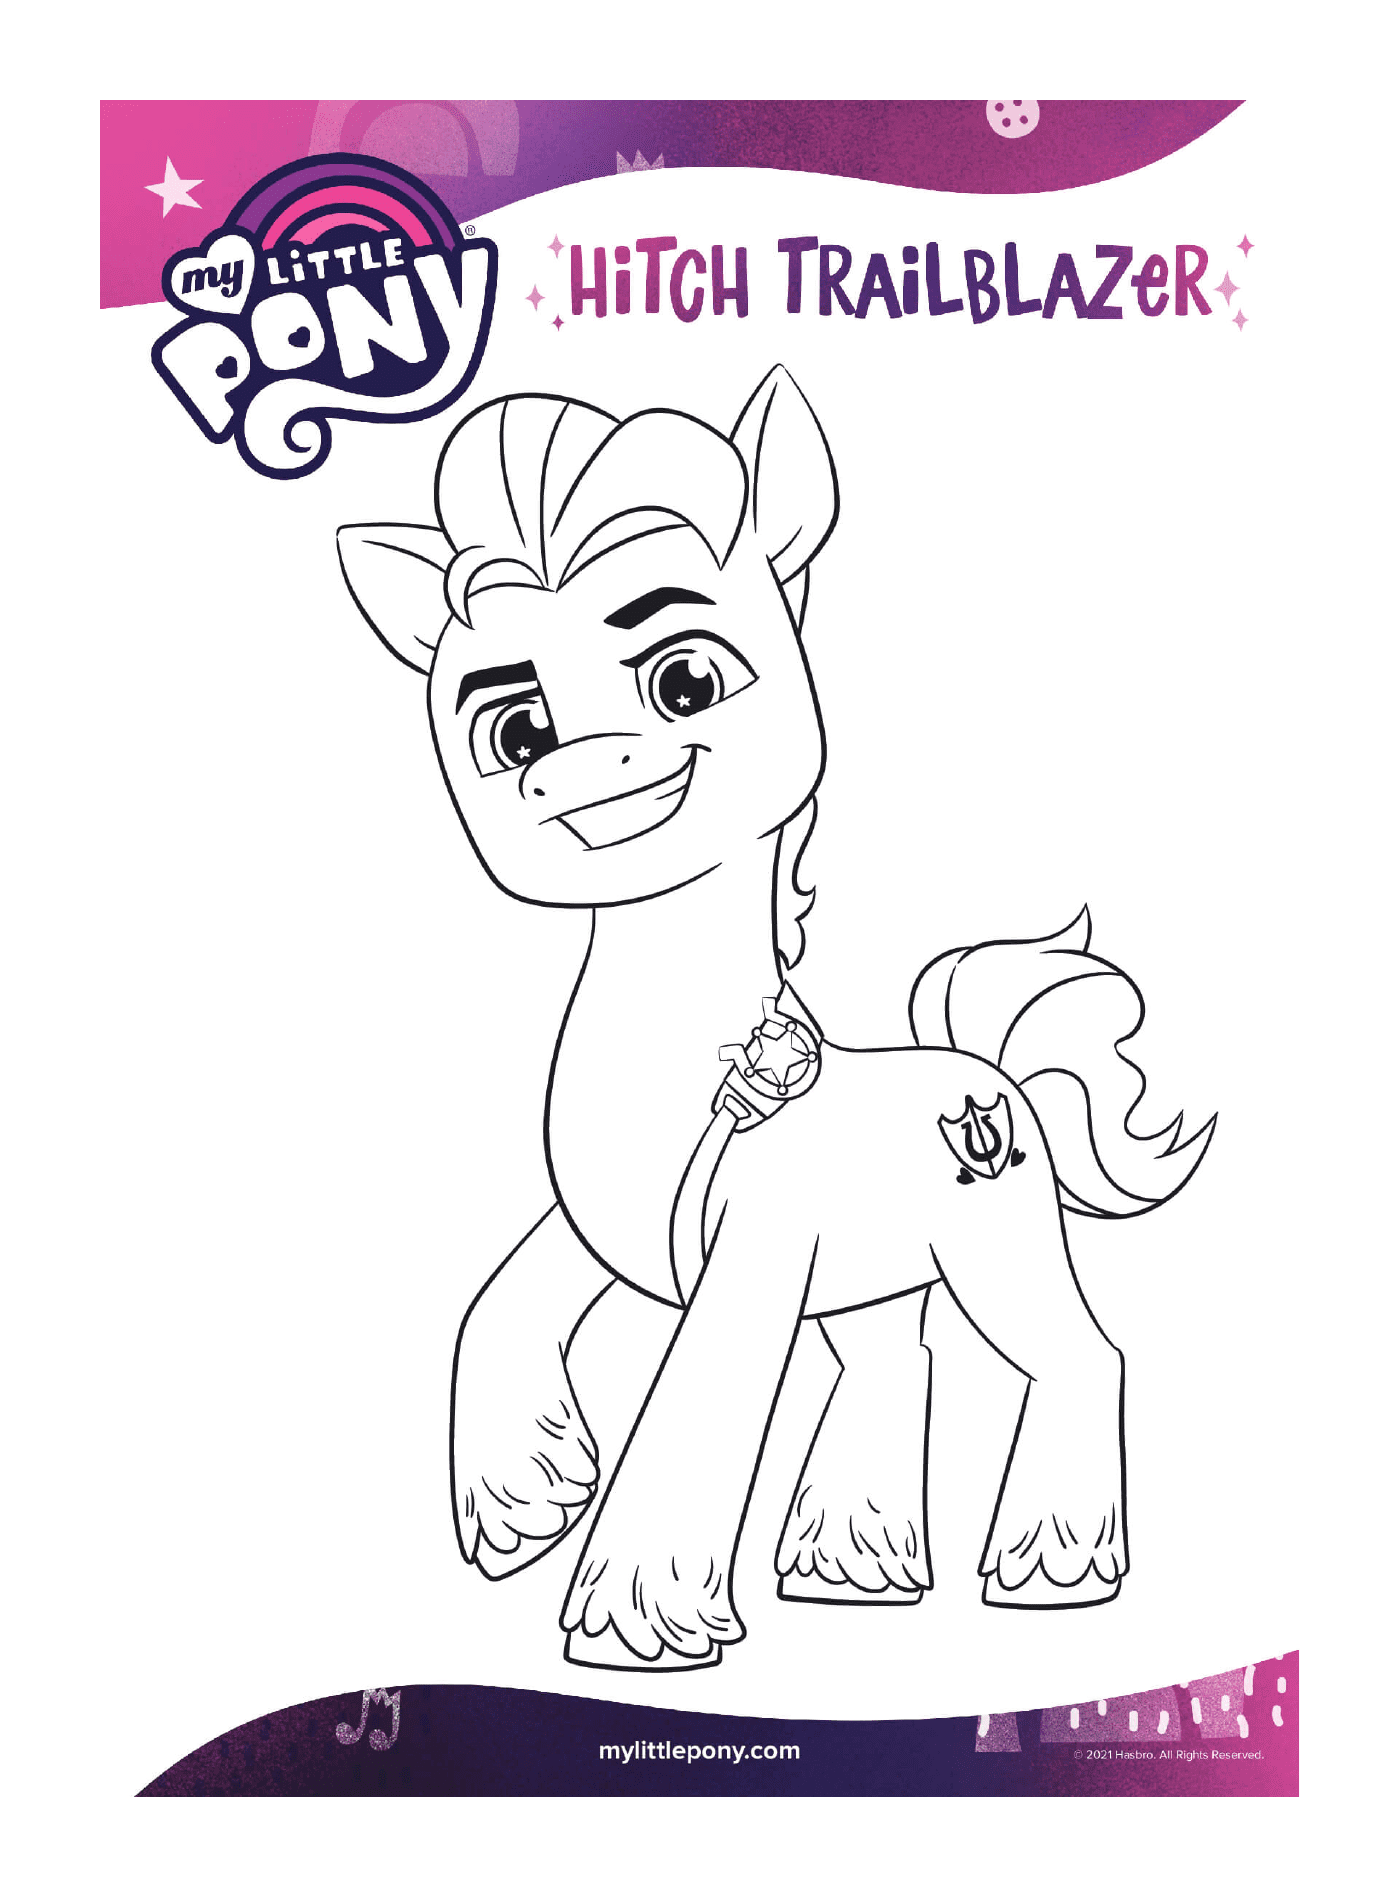  Hitch Trailblazer, новое поколение пони 